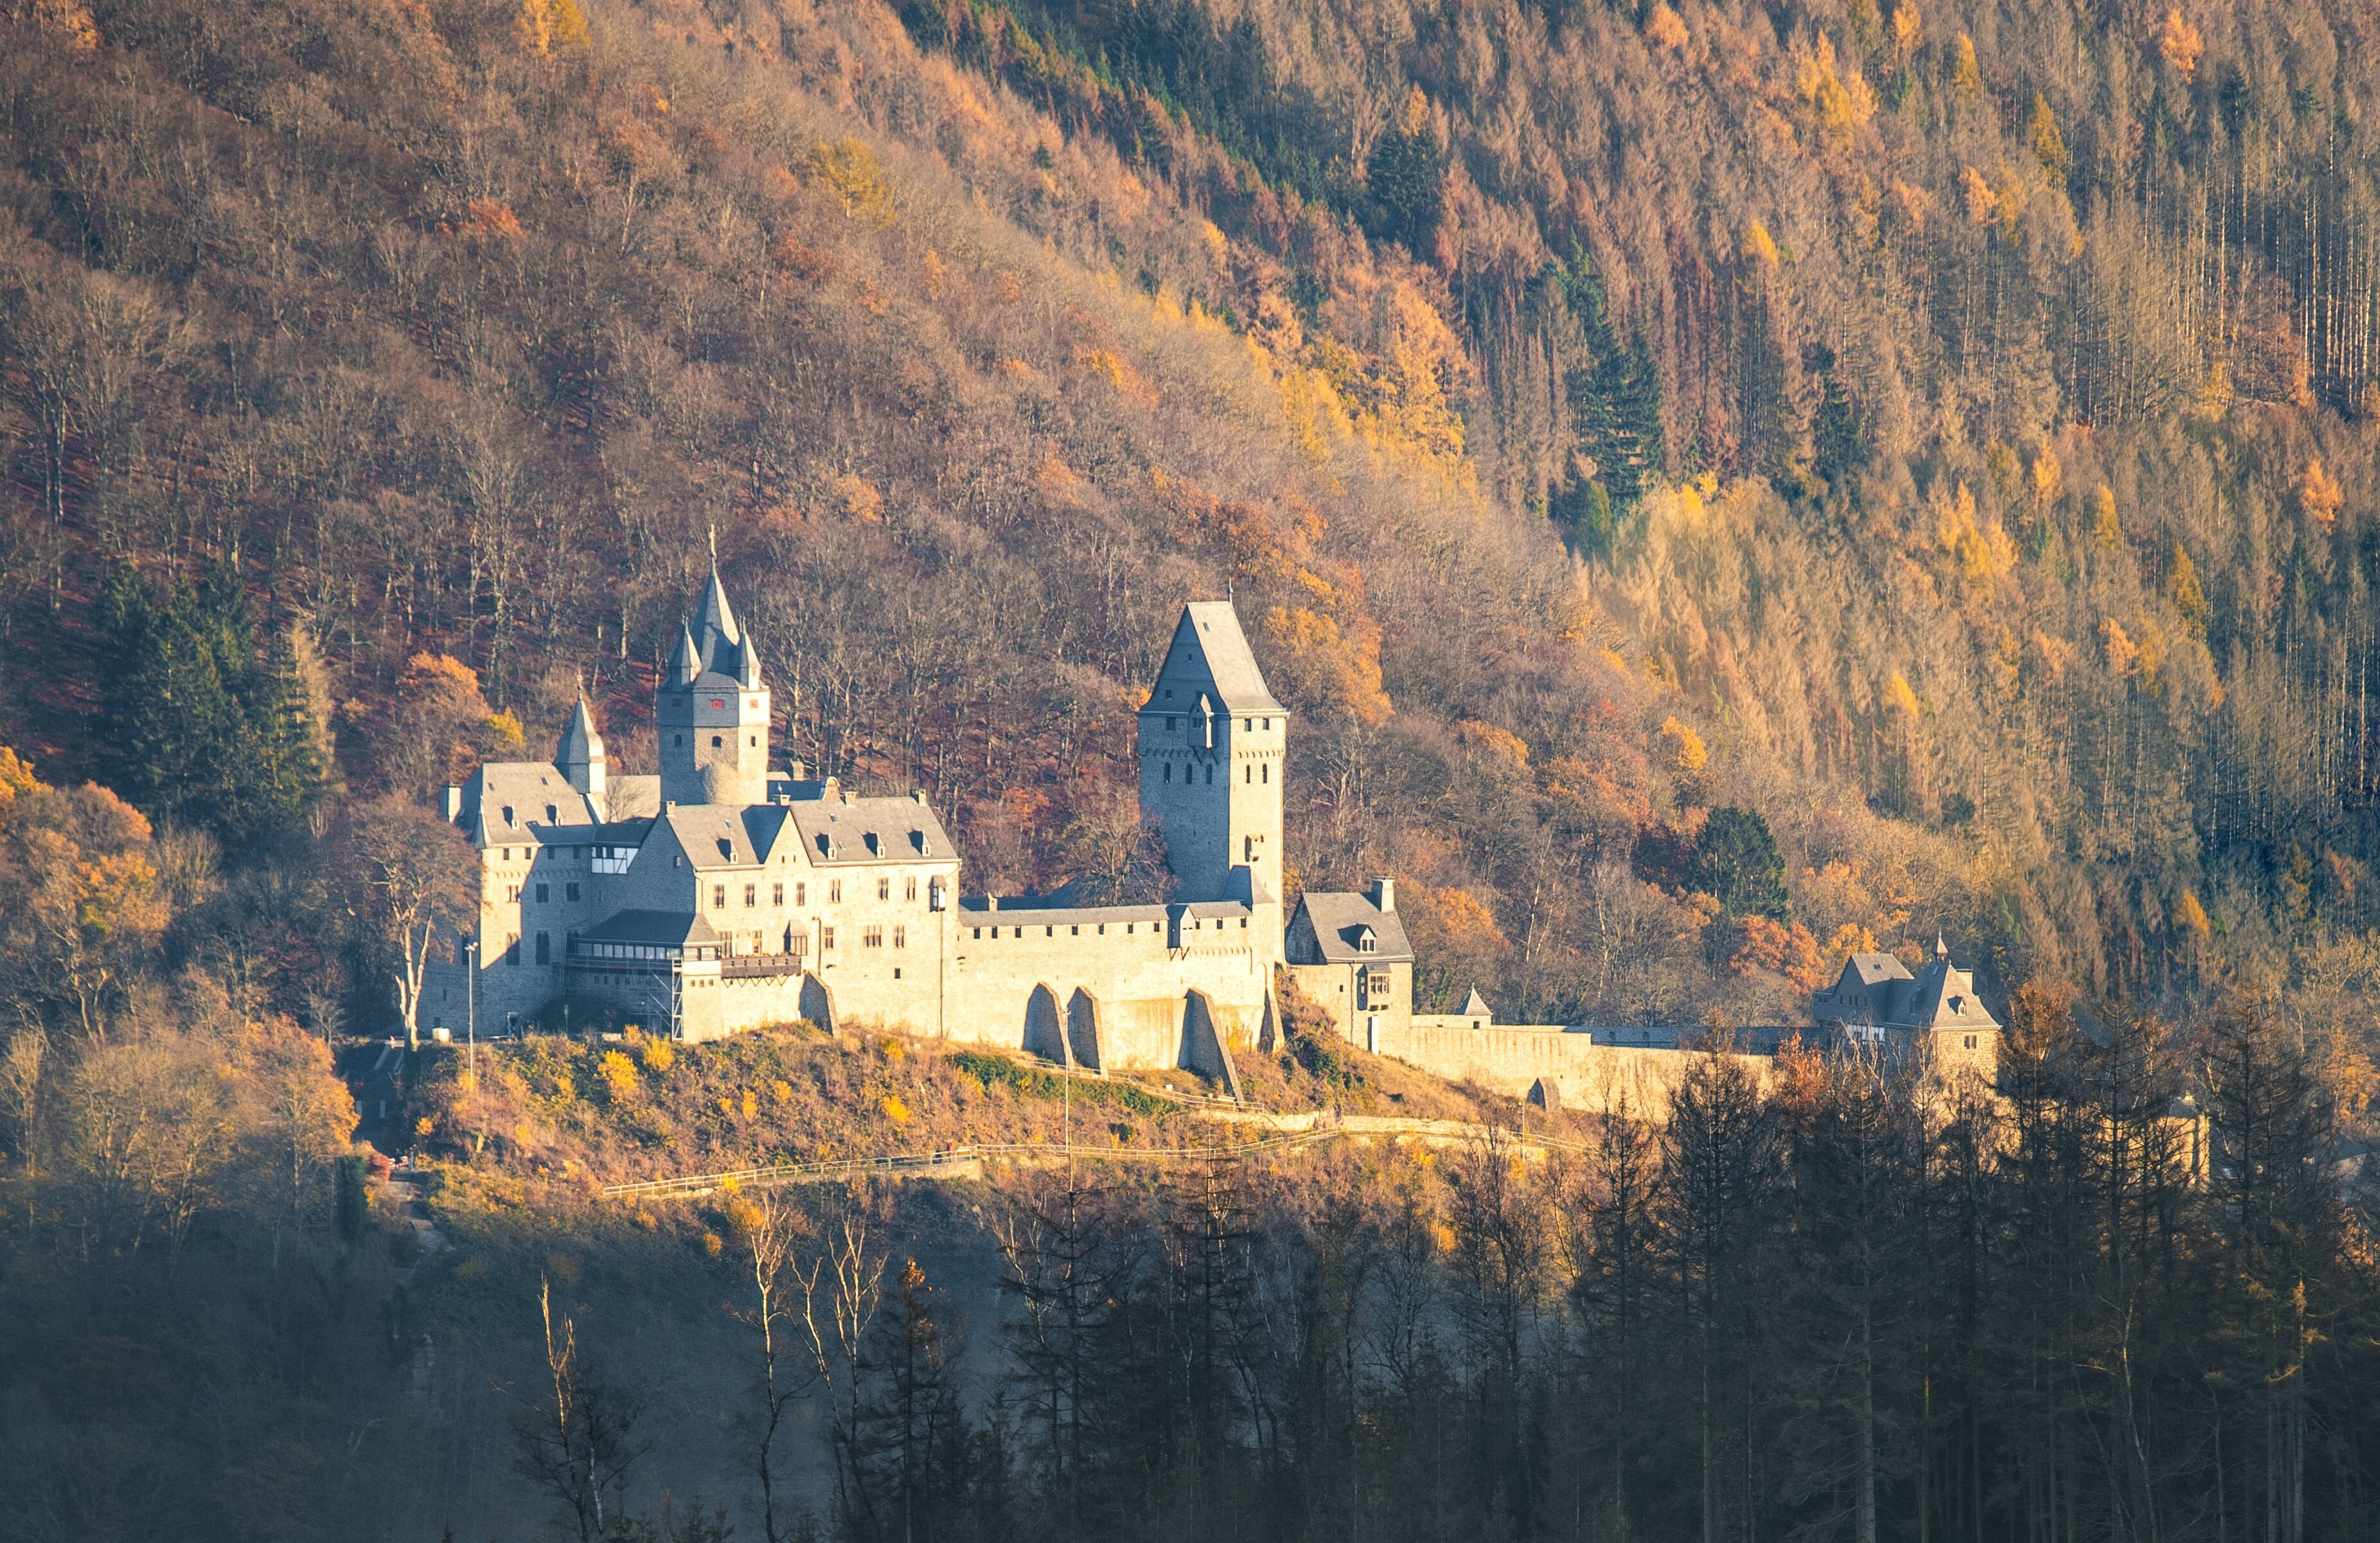 Считается, что первый туристический хостел появился в немецком замке Altena. Кстати, он работает до сих пор